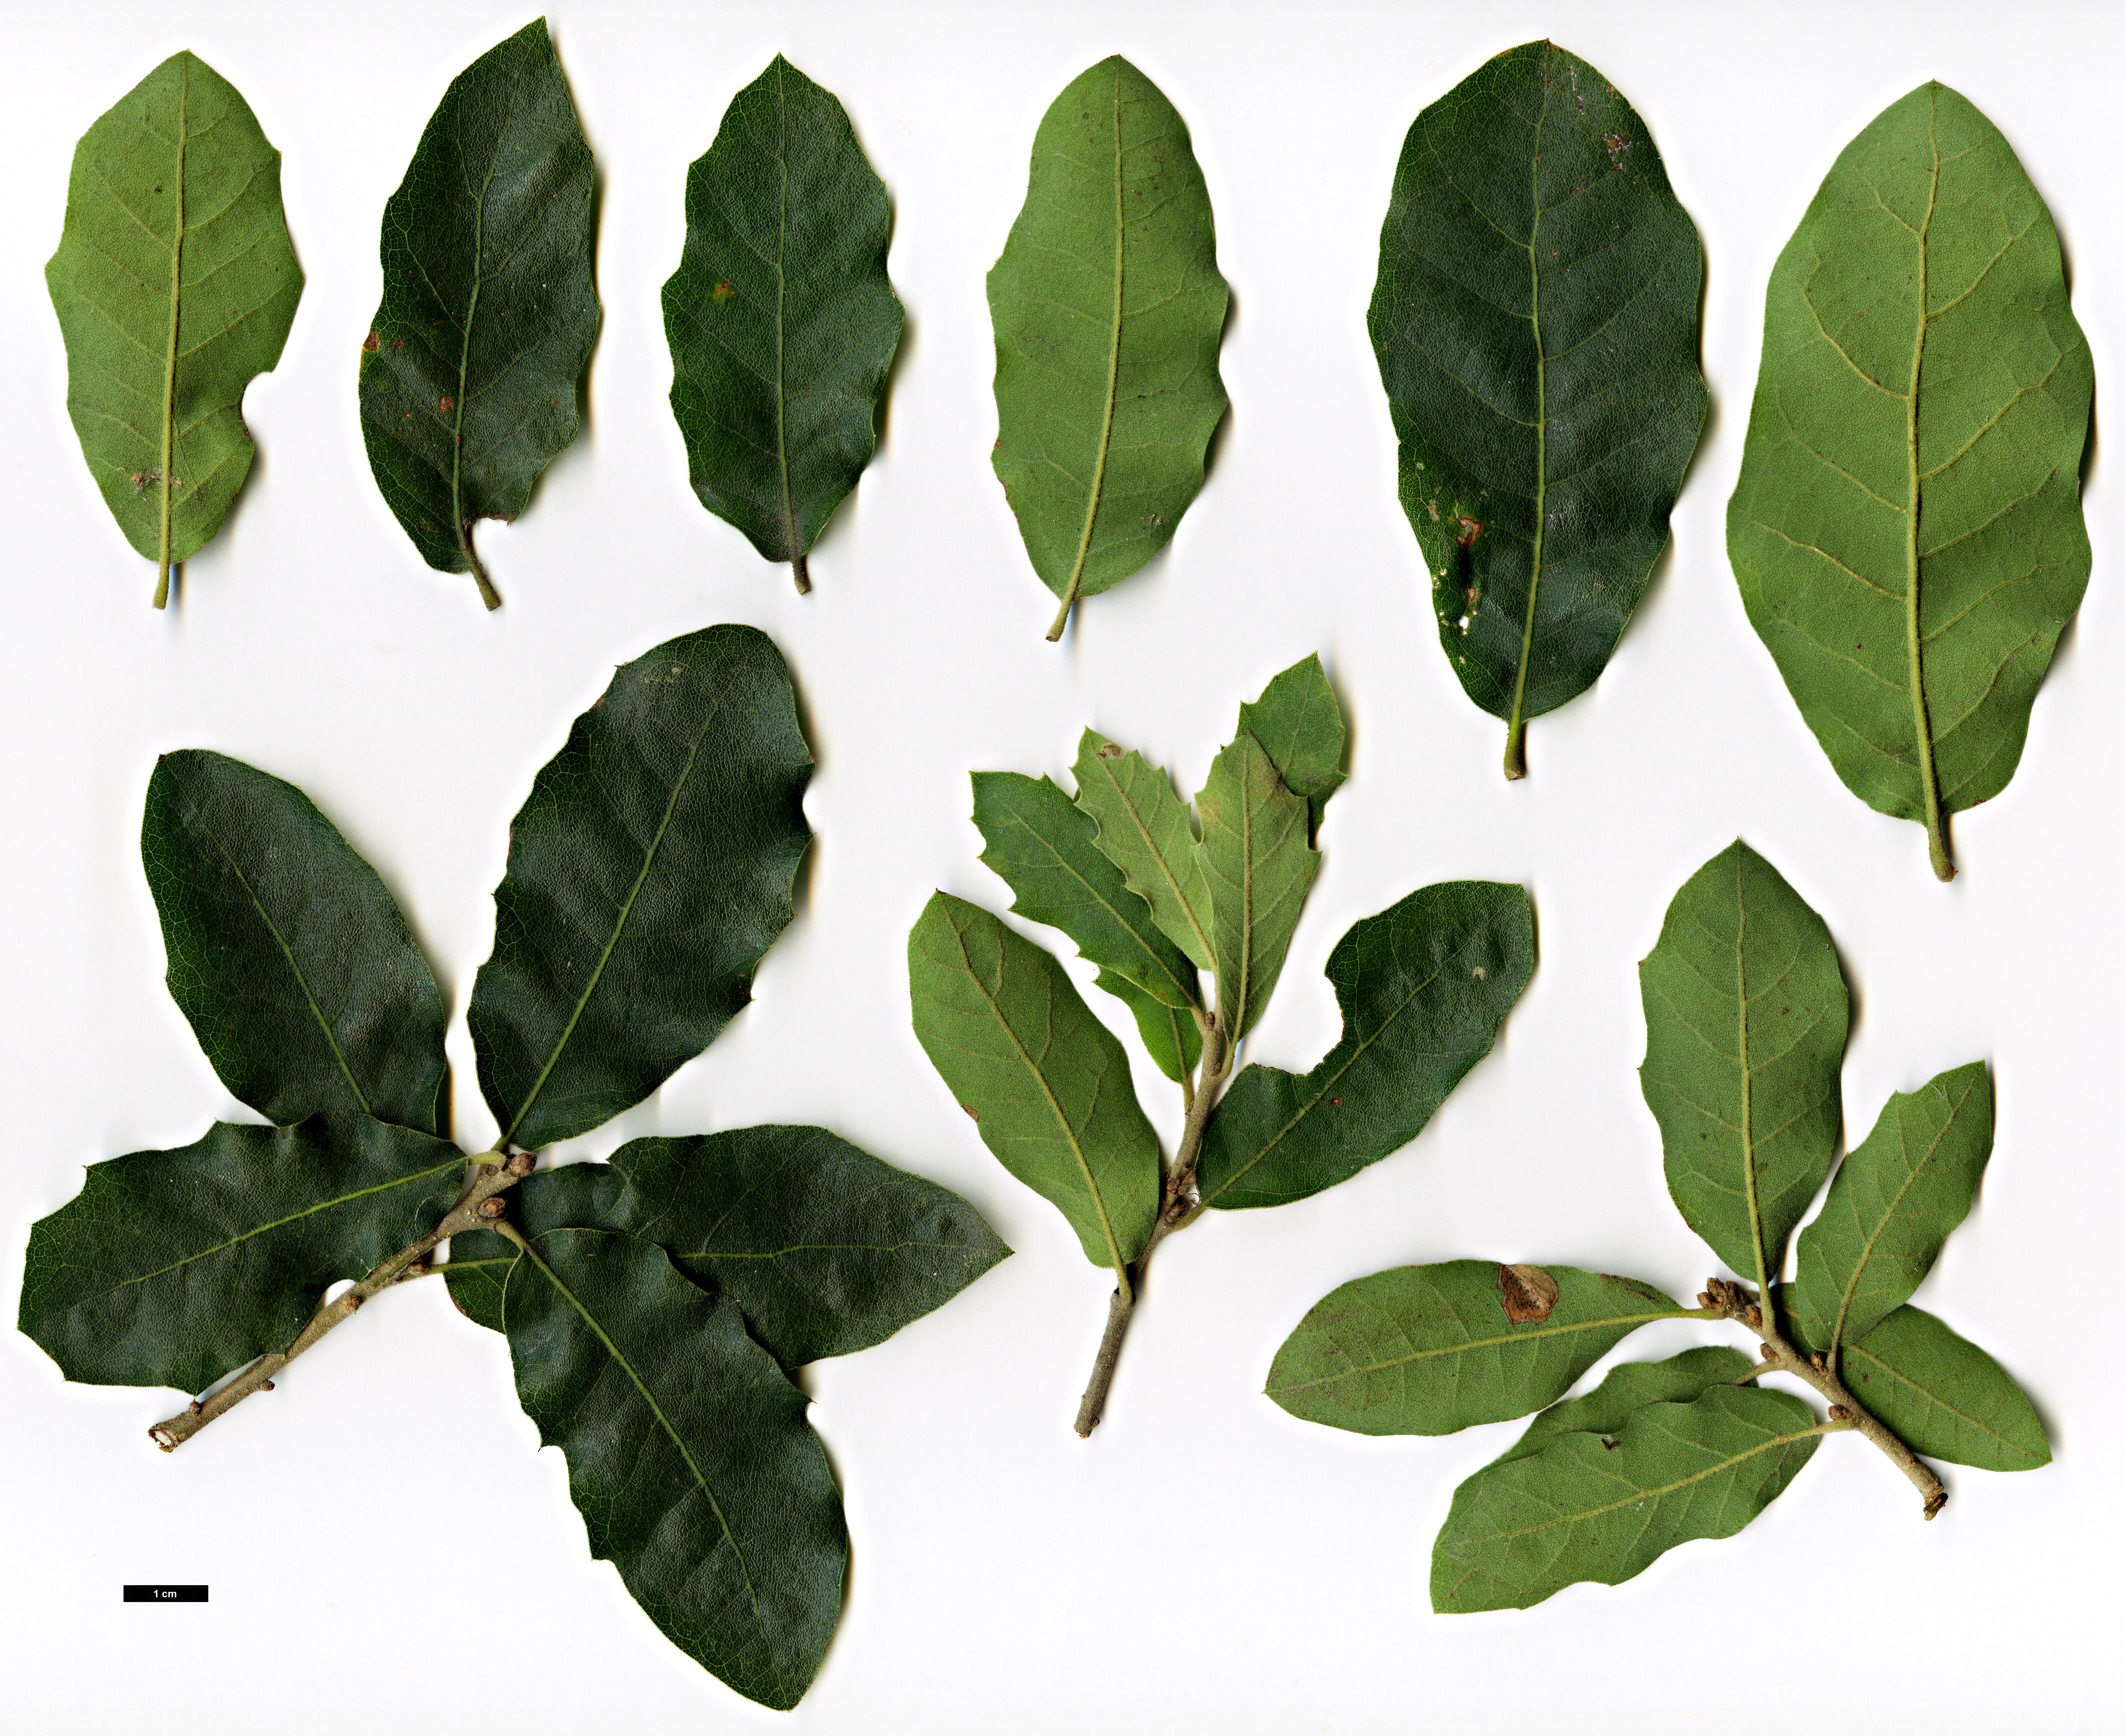 High resolution image: Family: Fagaceae - Genus: Quercus - Taxon: ×undulata - SpeciesSub: 'Prairie Fire' (Q.gambelii × Q.grisea)